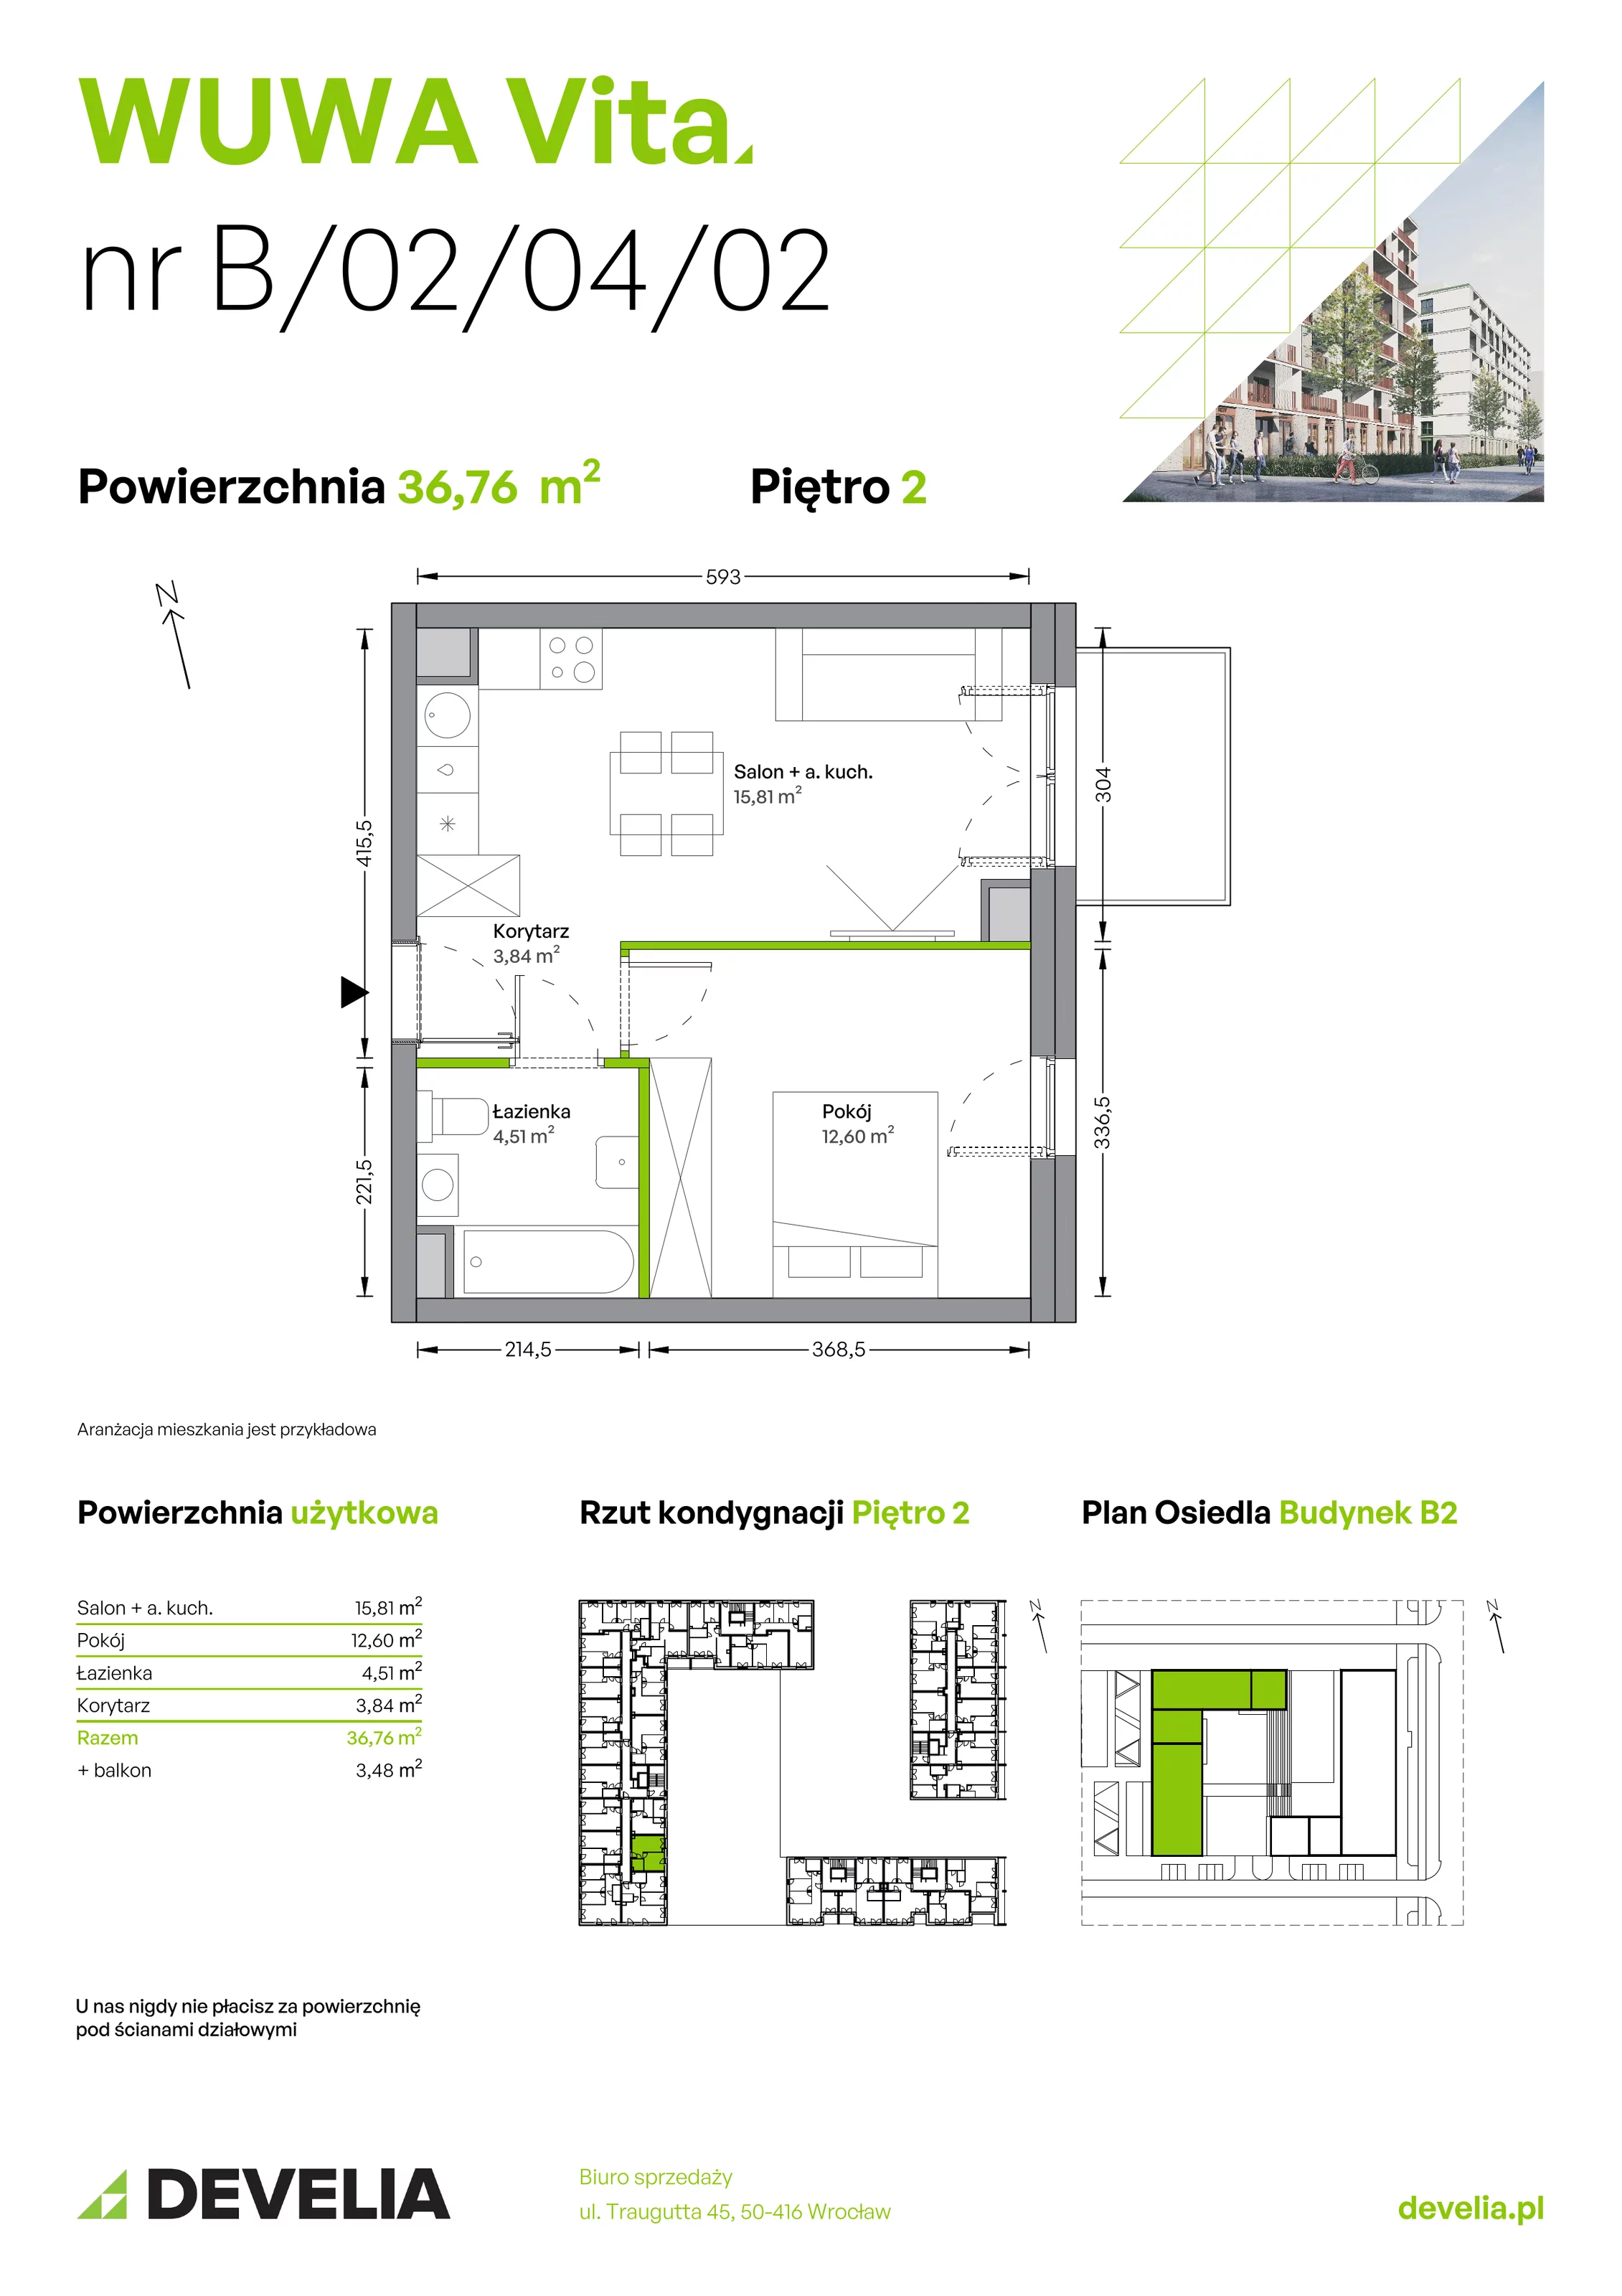 Mieszkanie 36,76 m², piętro 2, oferta nr B.02.04.02, WUWA Vita, Wrocław, Żerniki, Fabryczna, ul. Tadeusza Brzozy